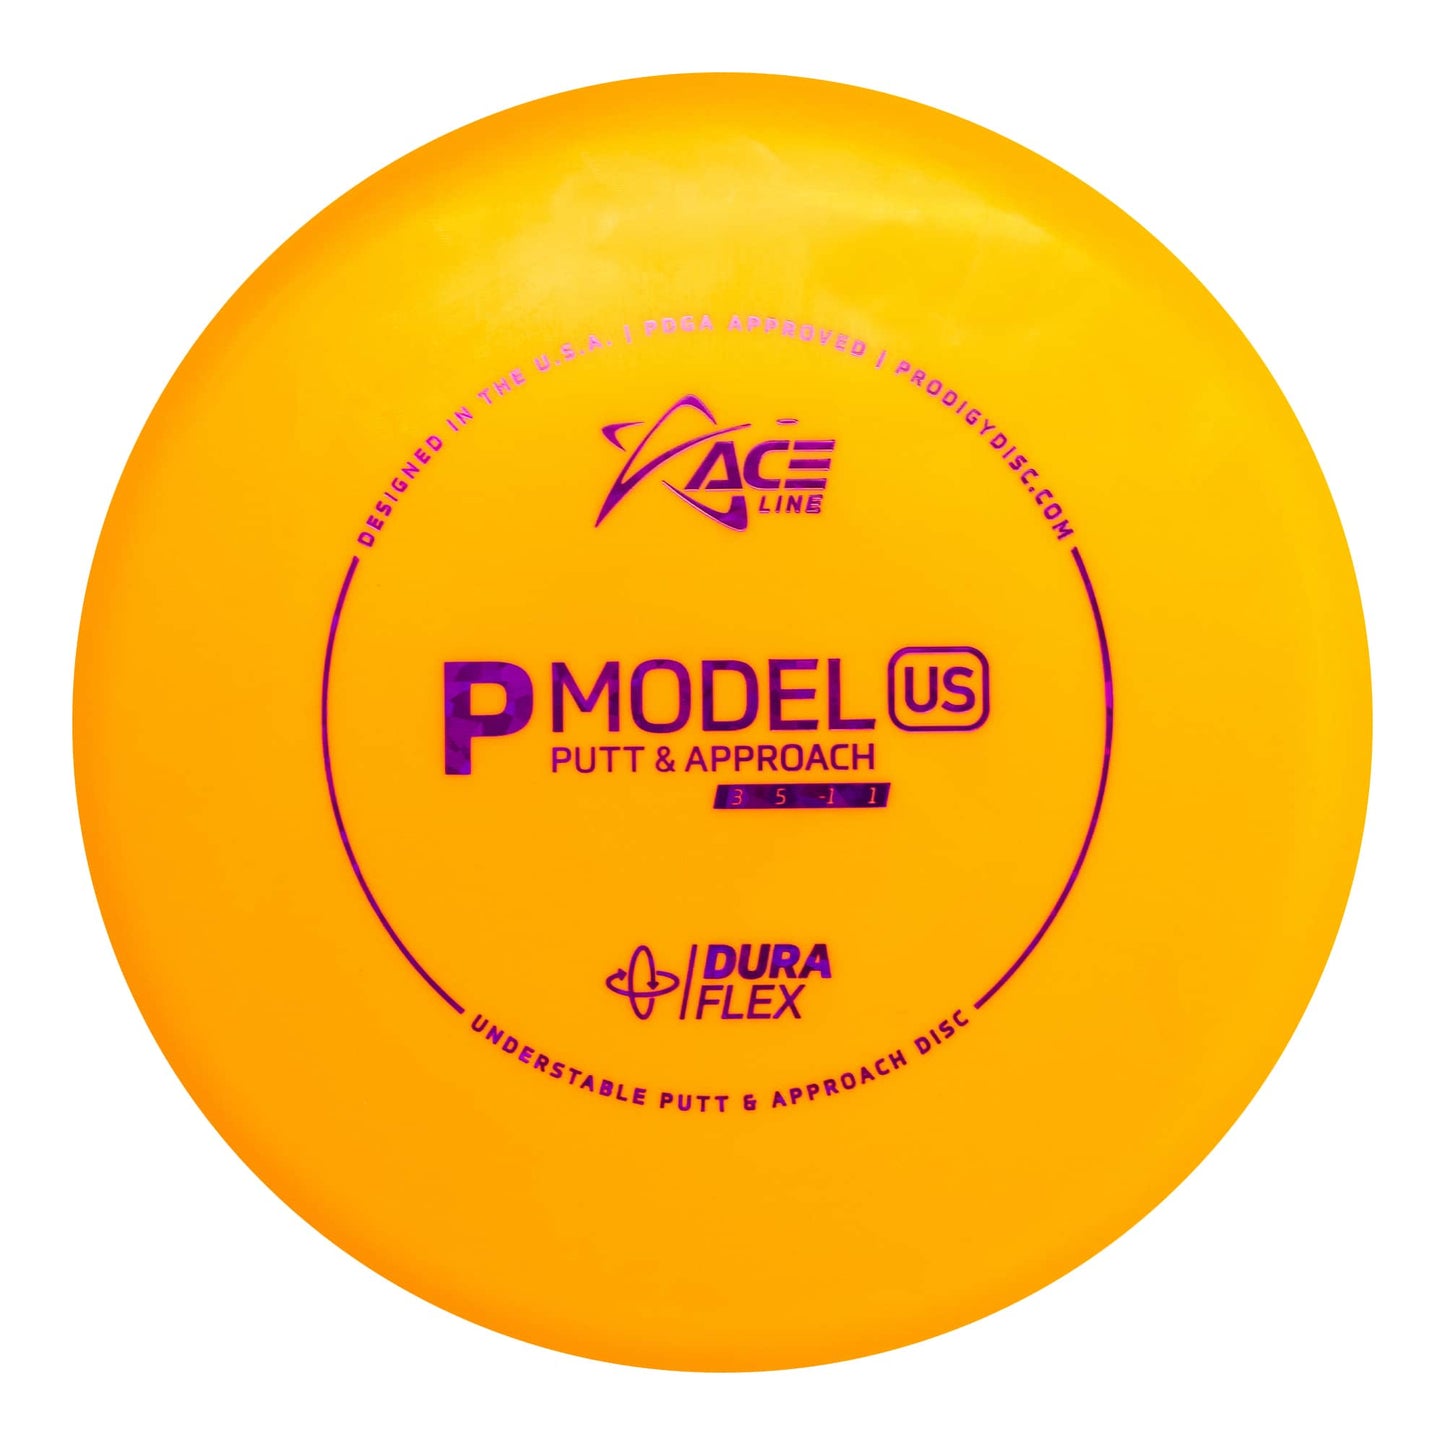 Prodigy Ace Line P Model US Putt & Approach Disc - Duraflex Plastic